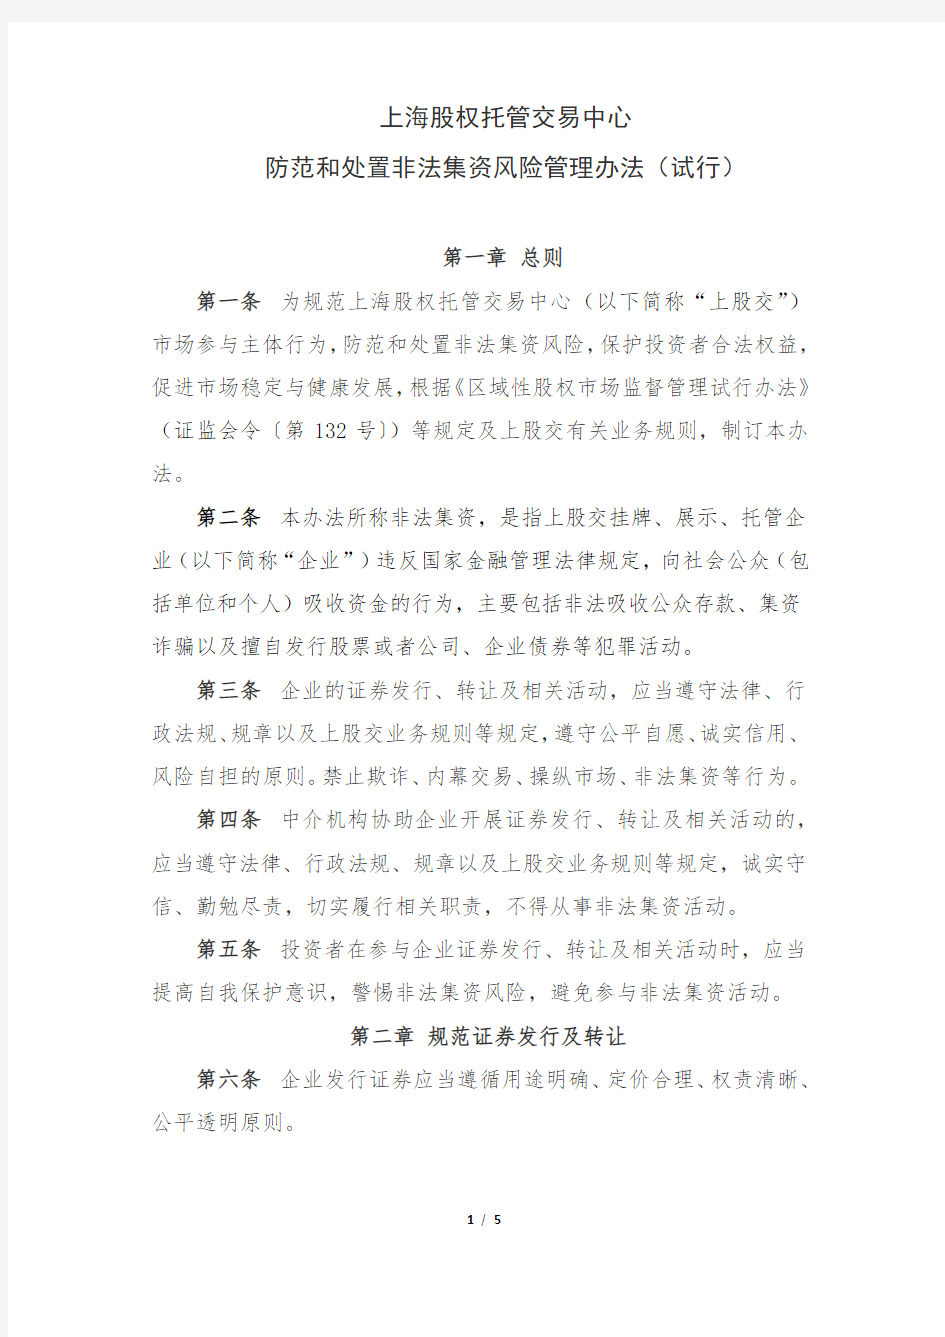 上海股权托管交易中心防范和处置非法集资风险管理办法(试